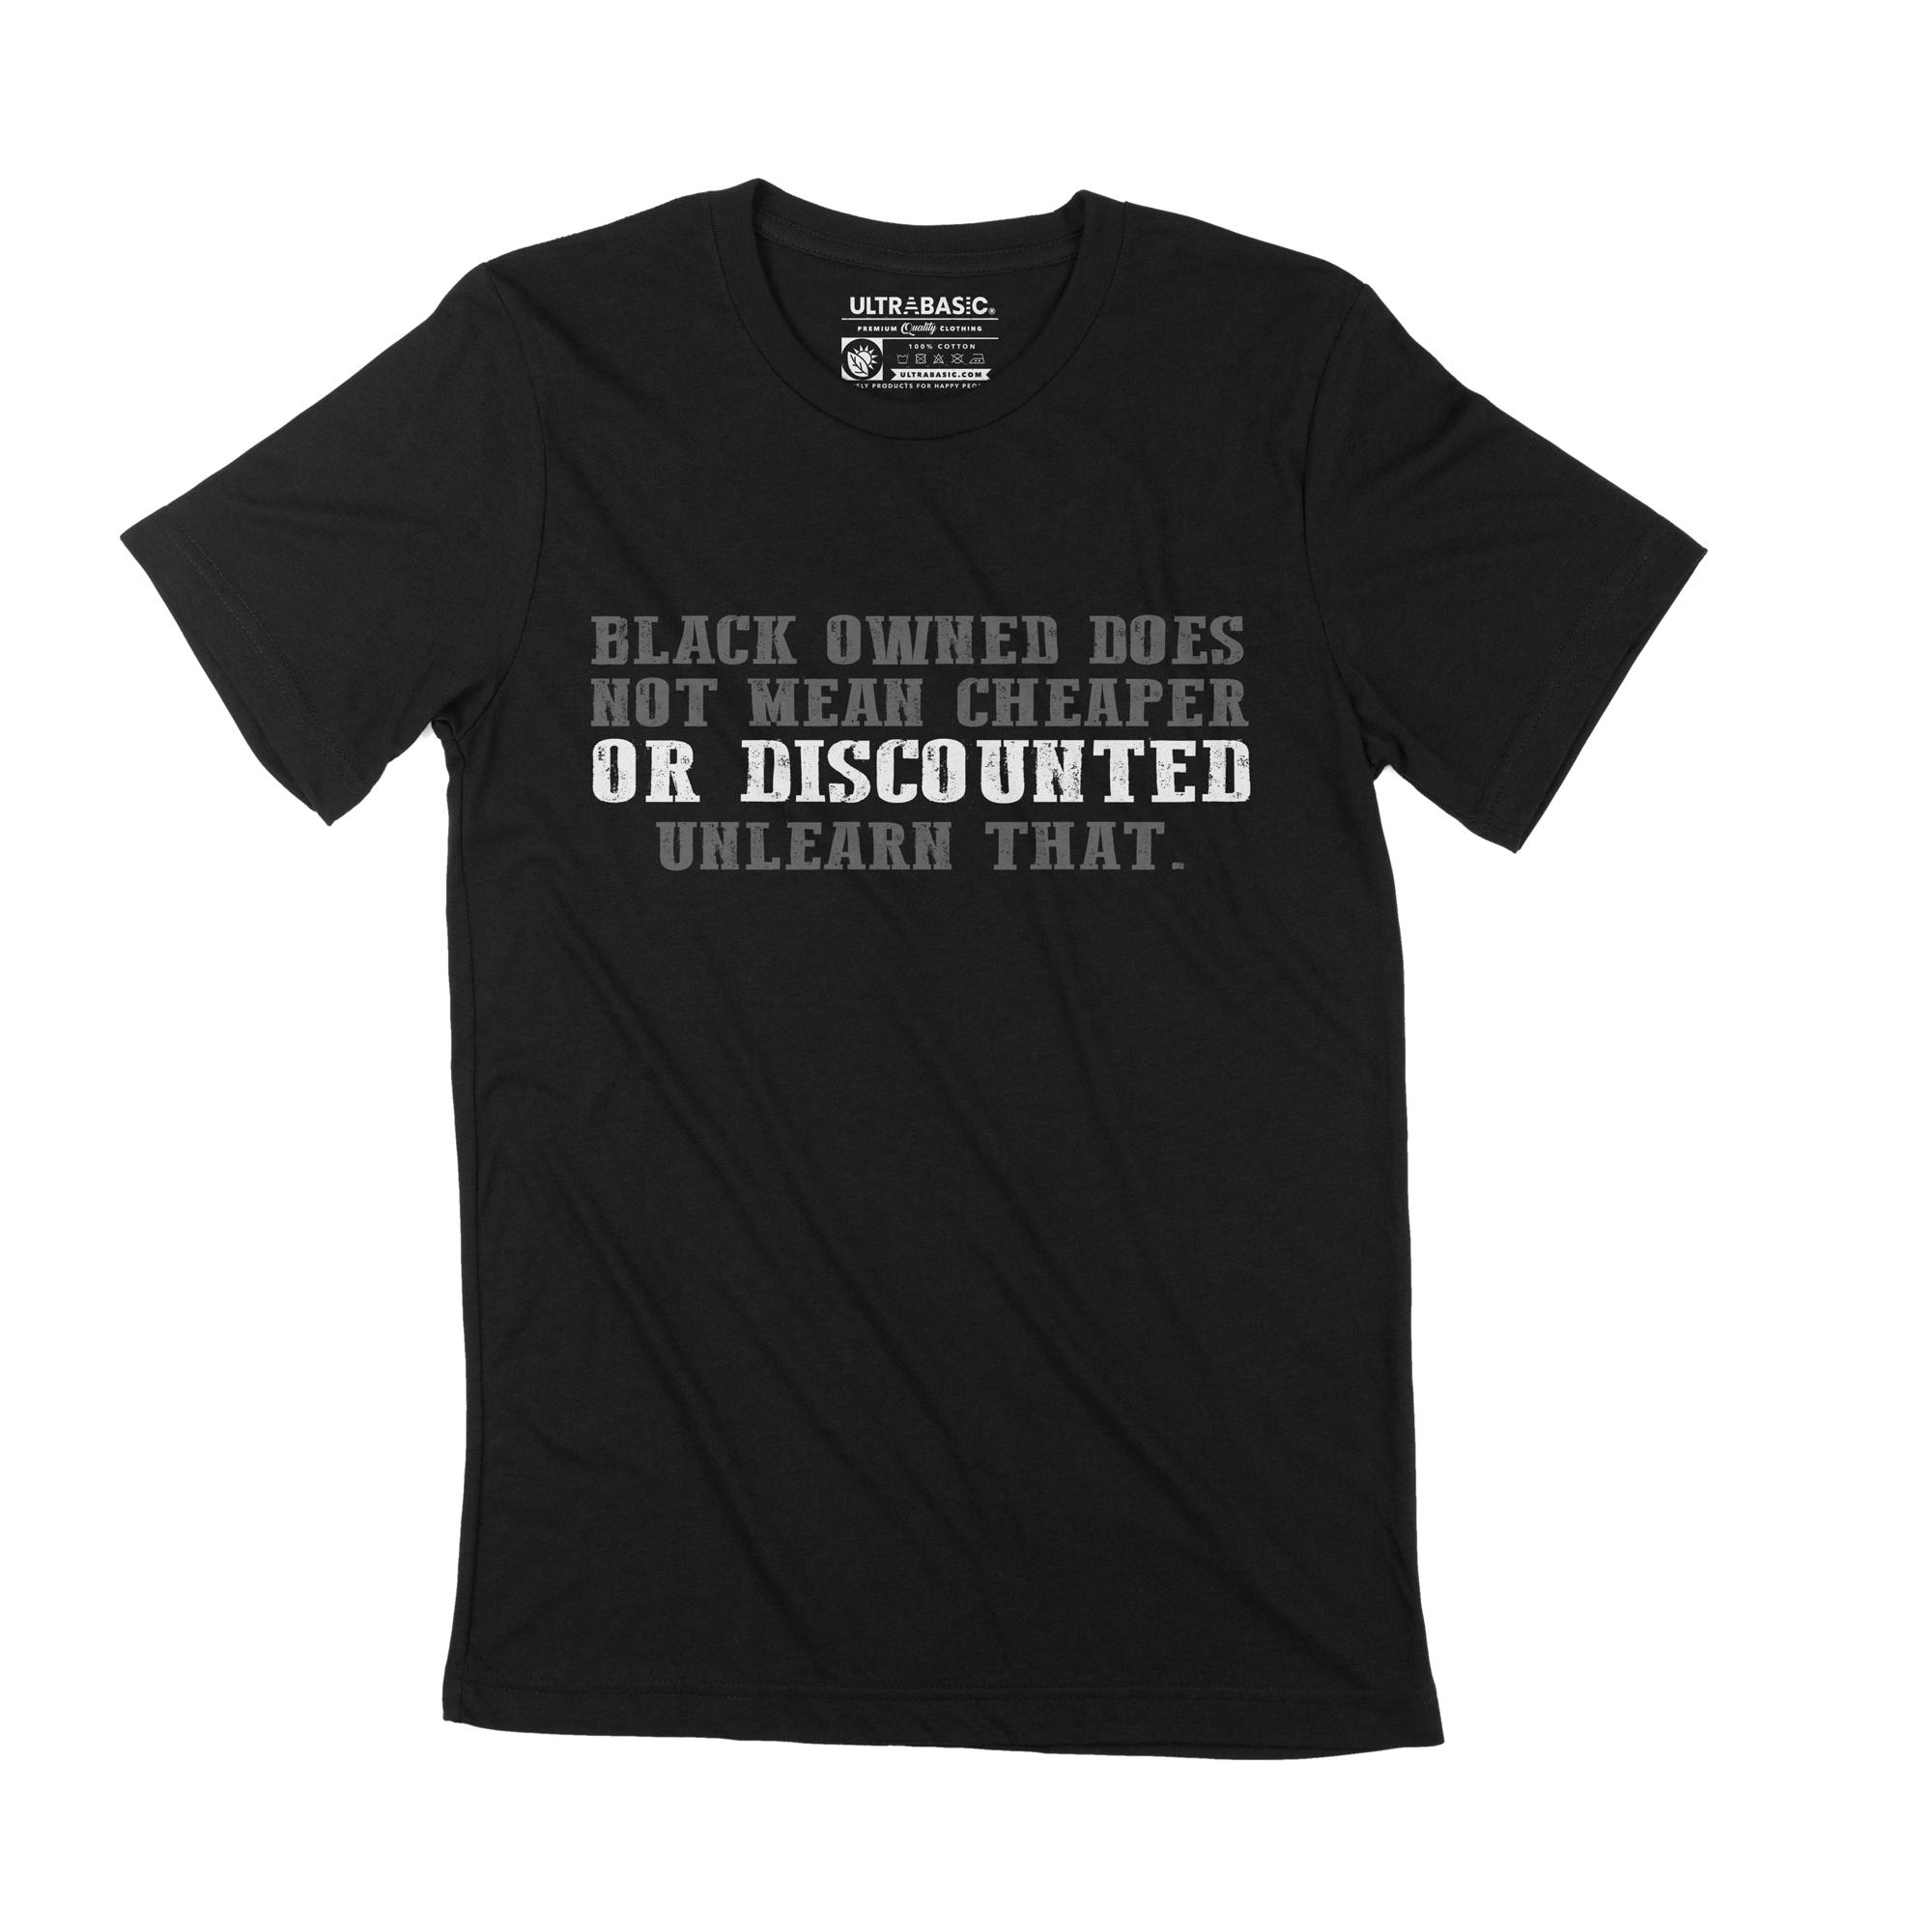 Ultrabasic Grafisch T-shirt voor heren, zwart, betekent niet dat het shirt goedkoper of met korting is